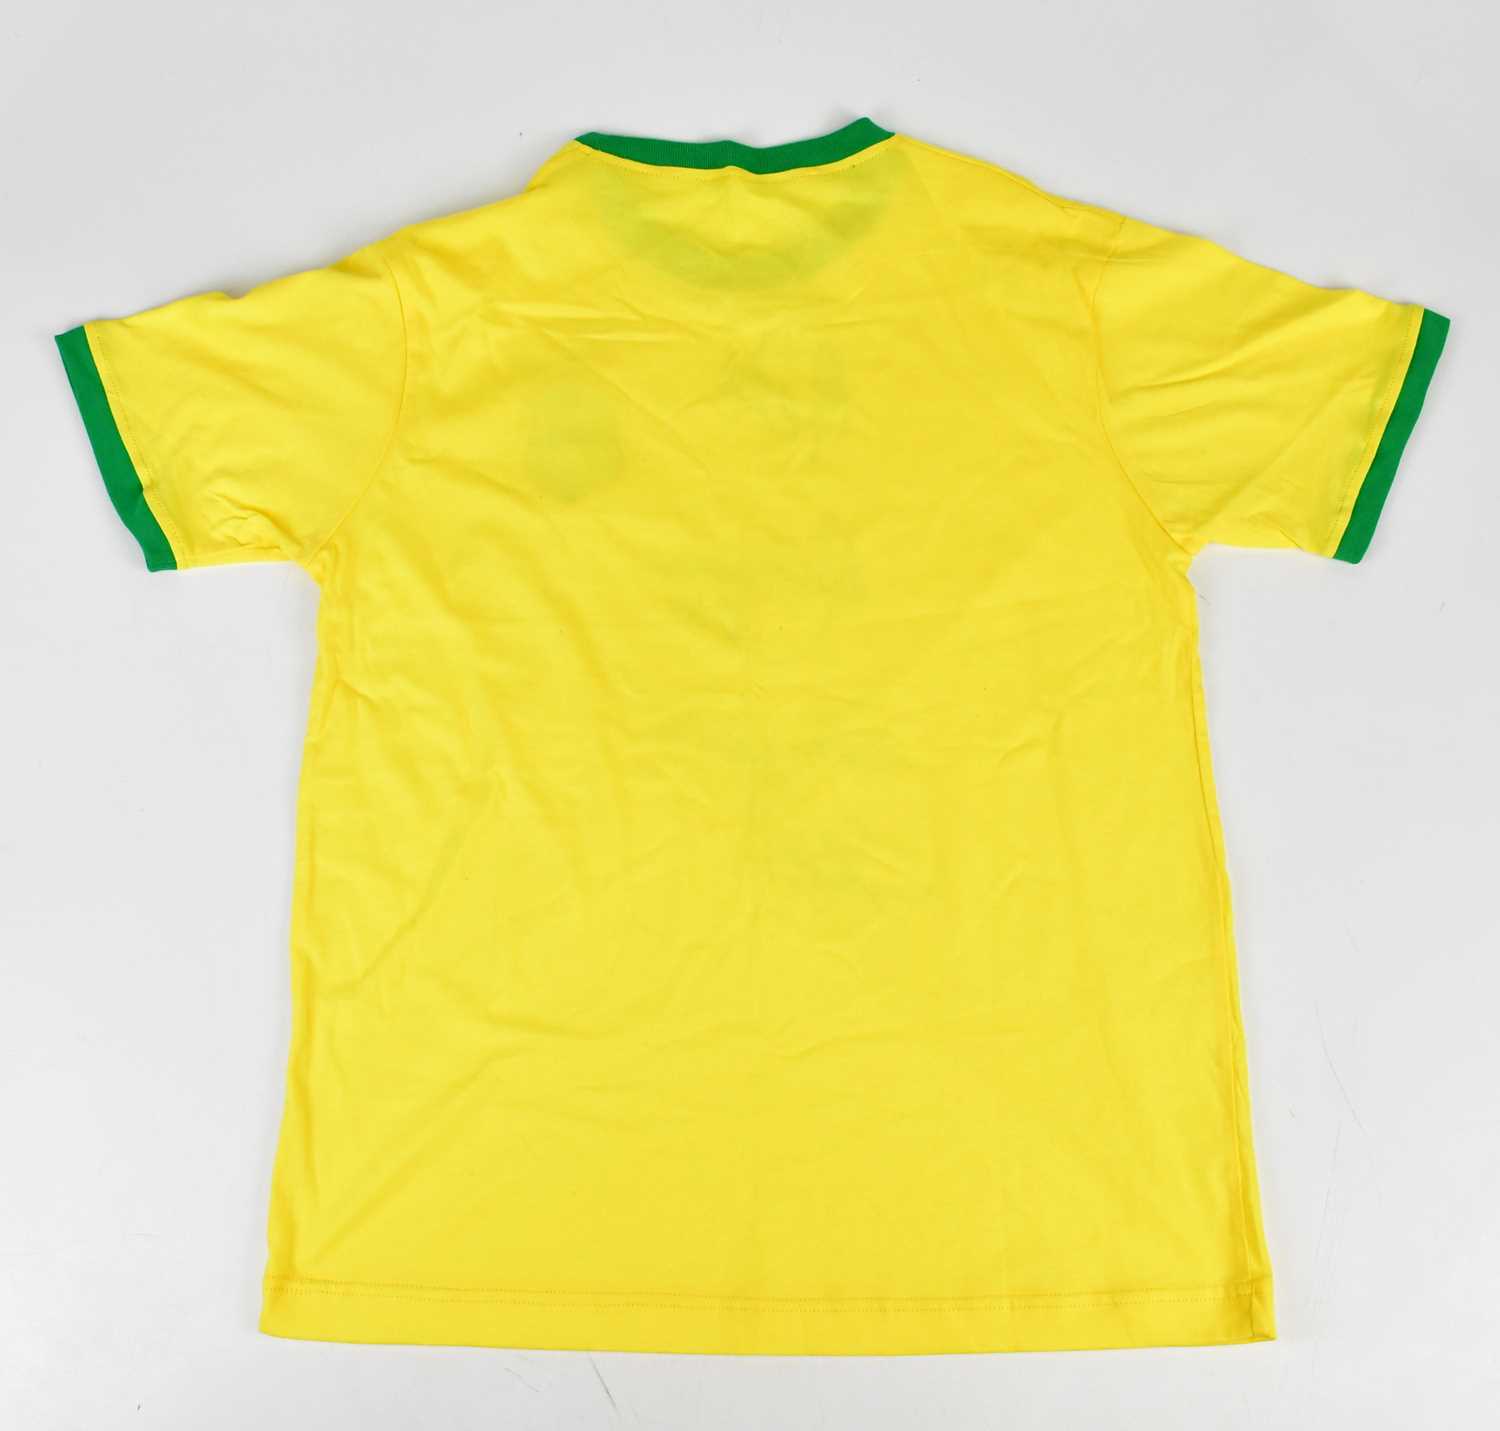 BRAZIL; a 1970s retro style football shirt, signed to the front by Pelé, Ronaldinho, Ronaldo, - Image 3 of 3